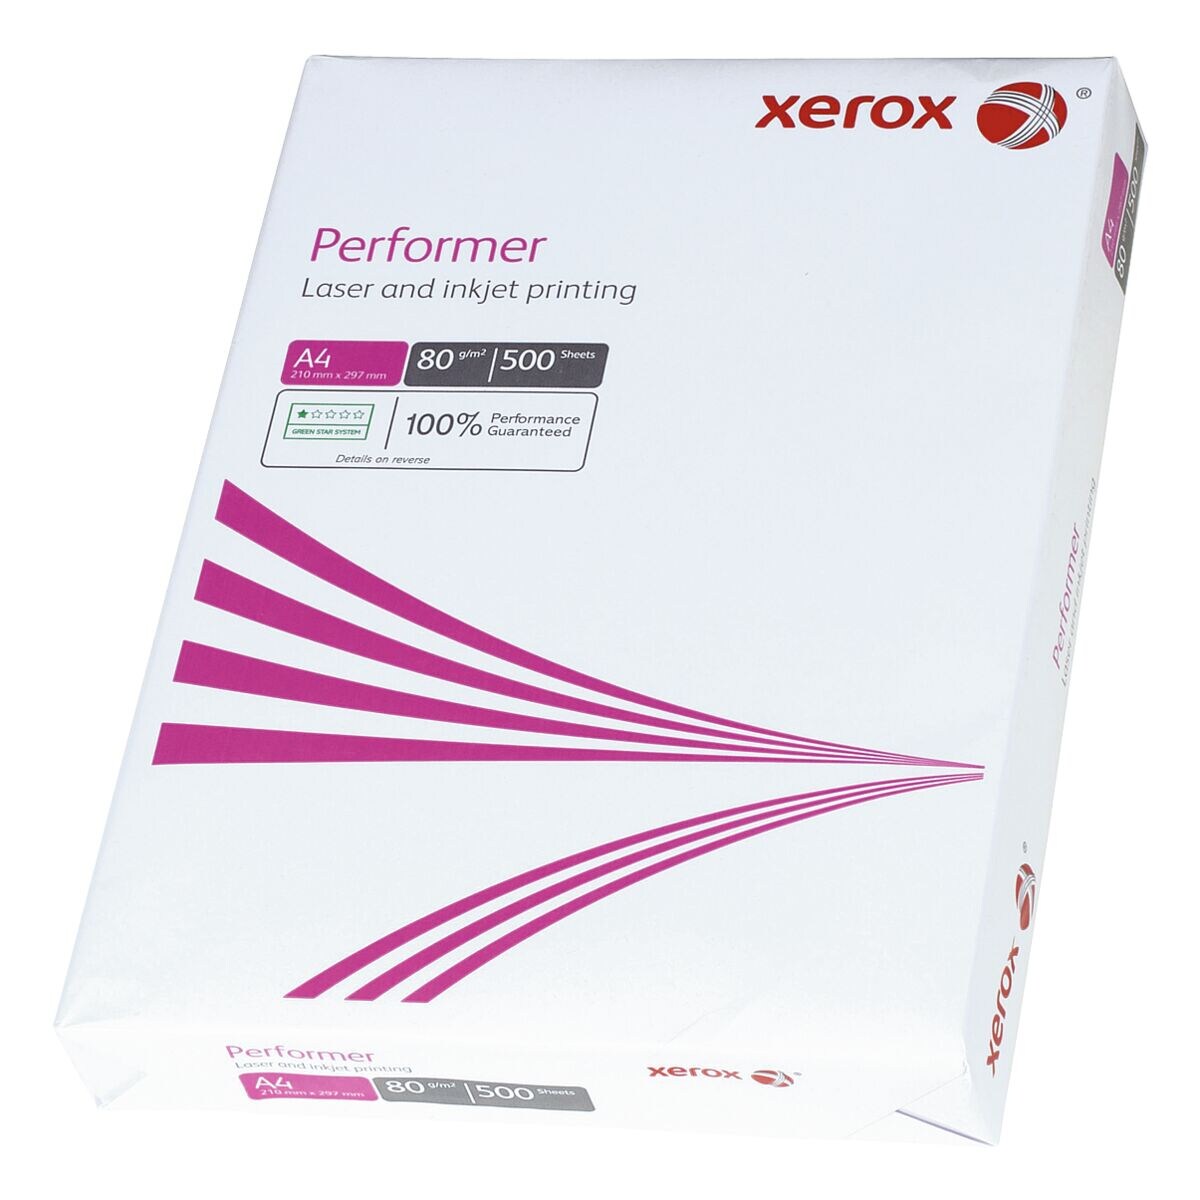 Papier photocopieur A4 Xerox Performer - 500 feuilles au total, 80g/m